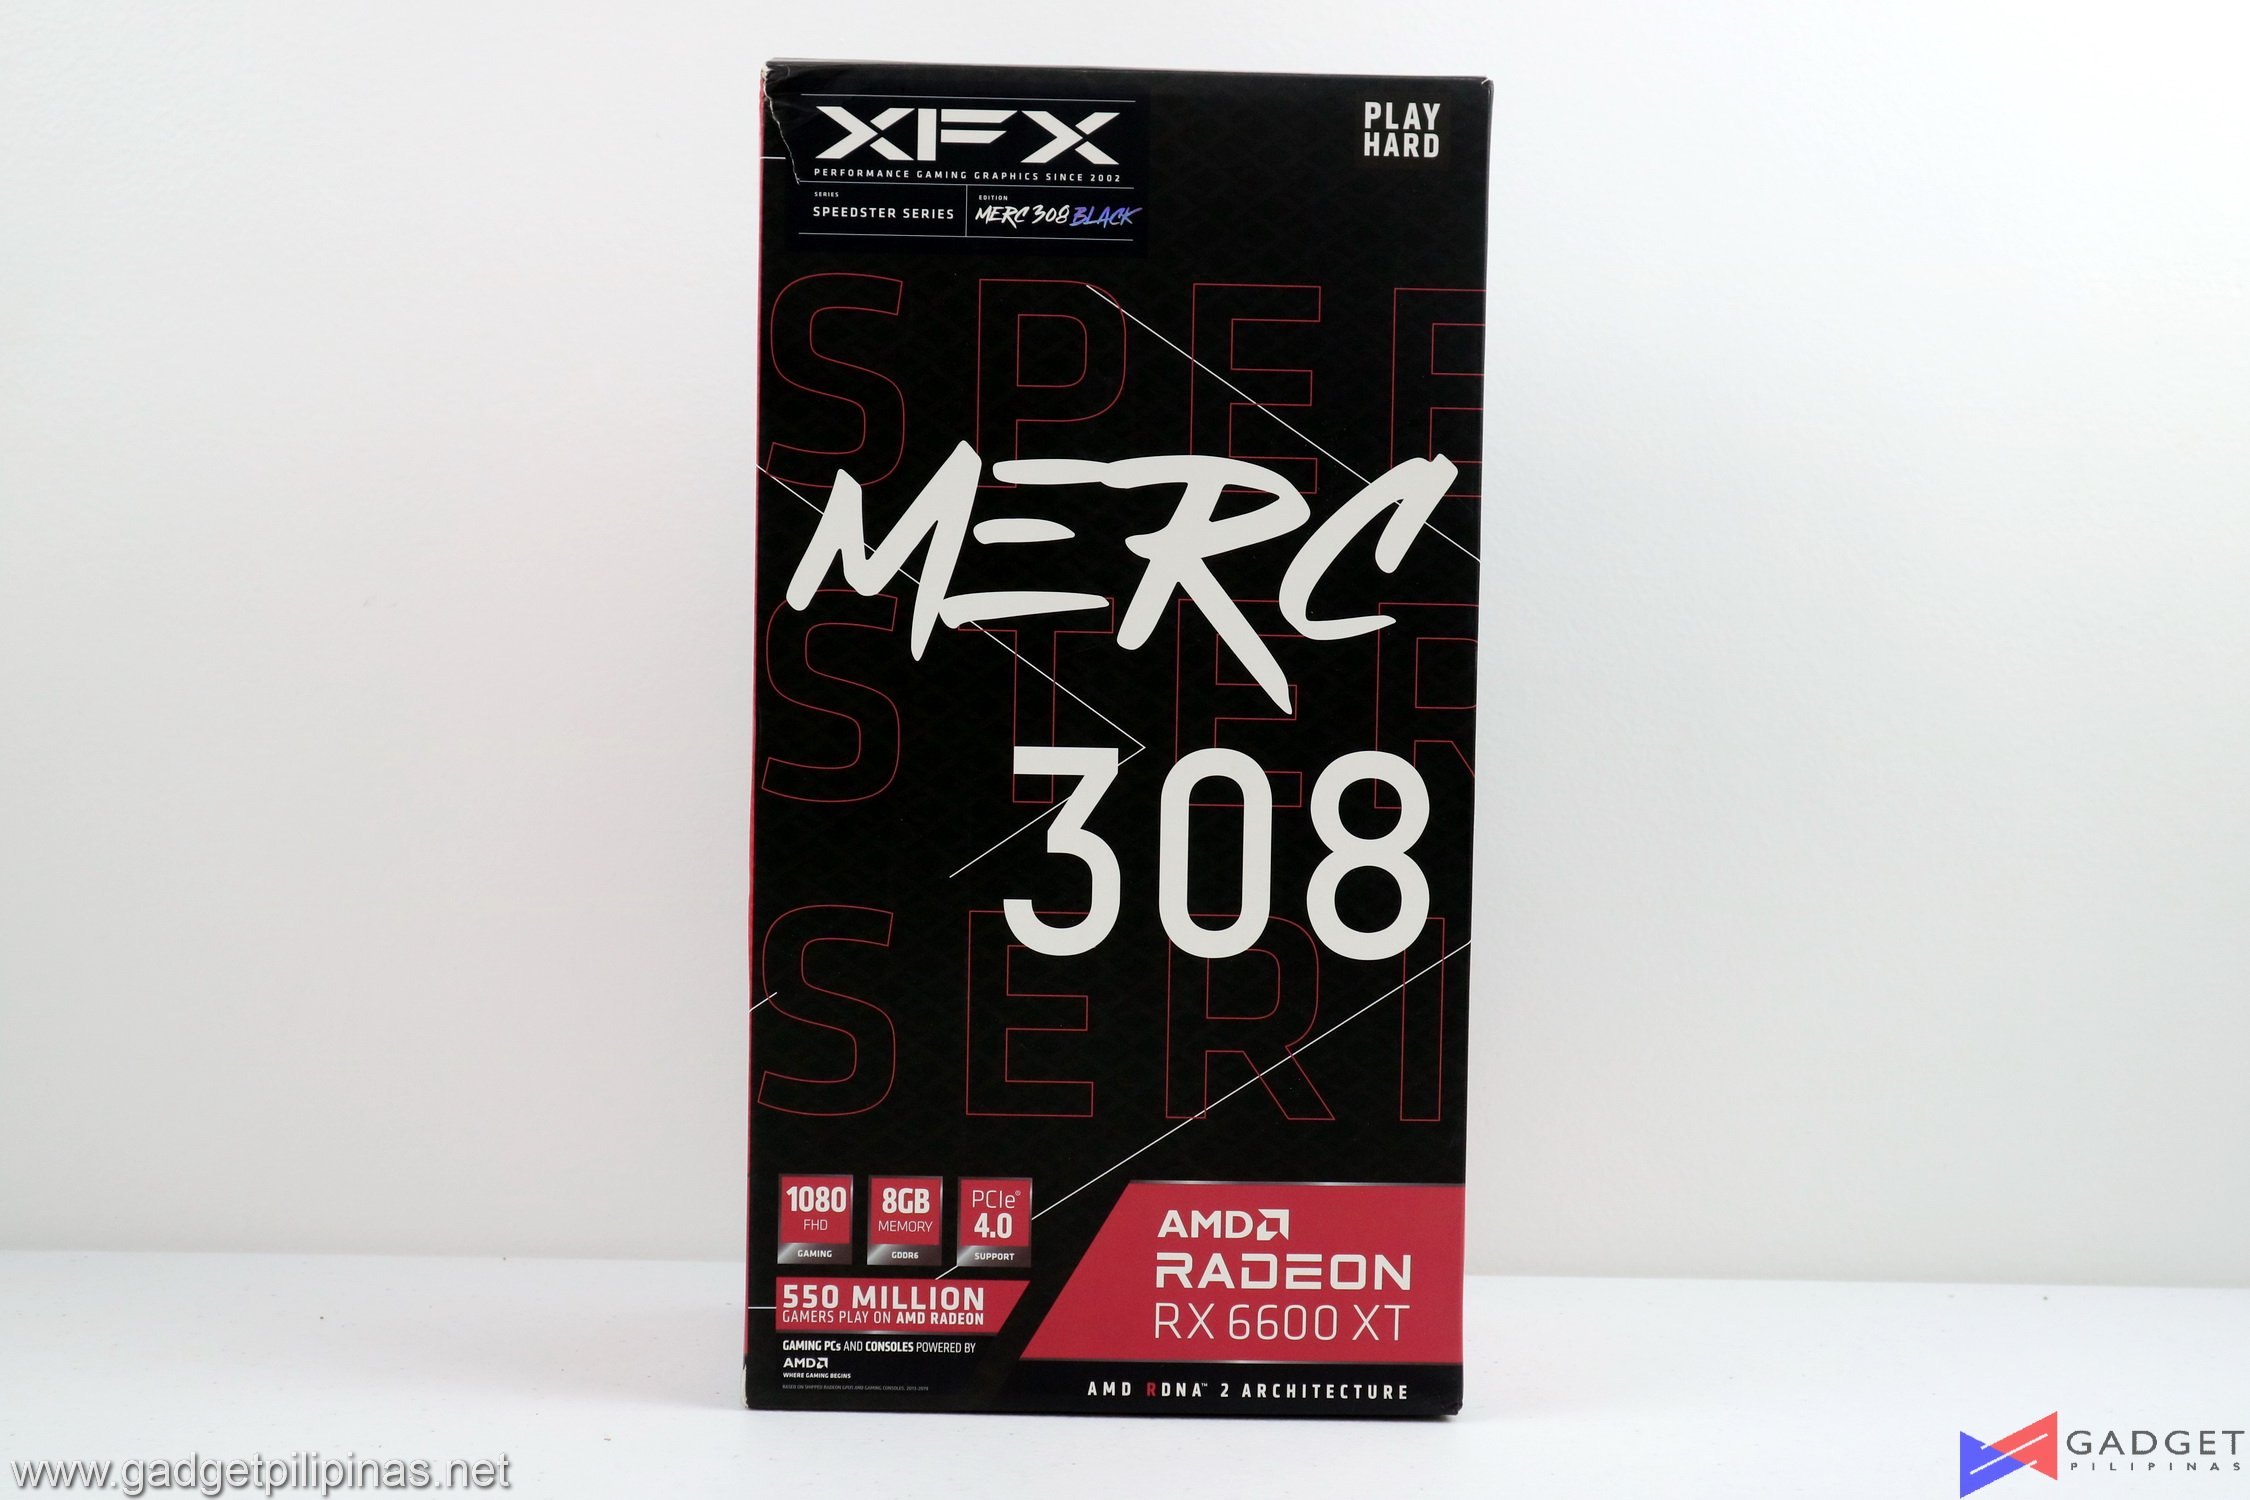 XFX Radeon RX 6600 XT MERC 308 Review 004